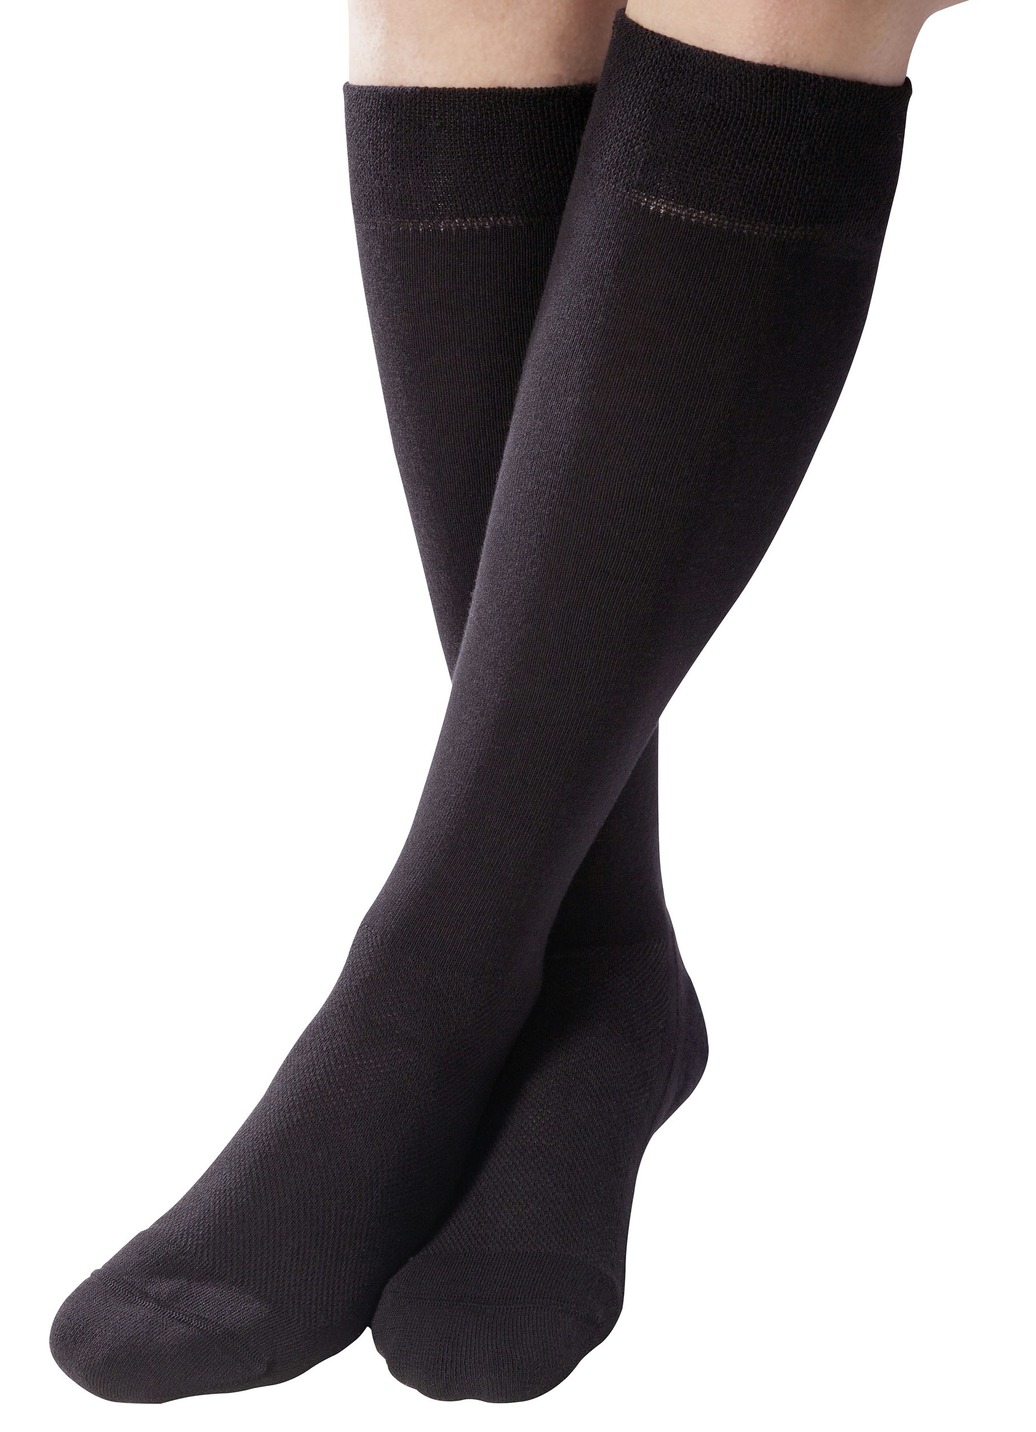 Gesundheitsstrümpfe - Zweierpack Komfort-Kniestrümpfe oder -Socken , in Größe 001 bis 003, in Farbe SCHWARZ, in Ausführung Zweierpack Komfort-Socken Ansicht 1